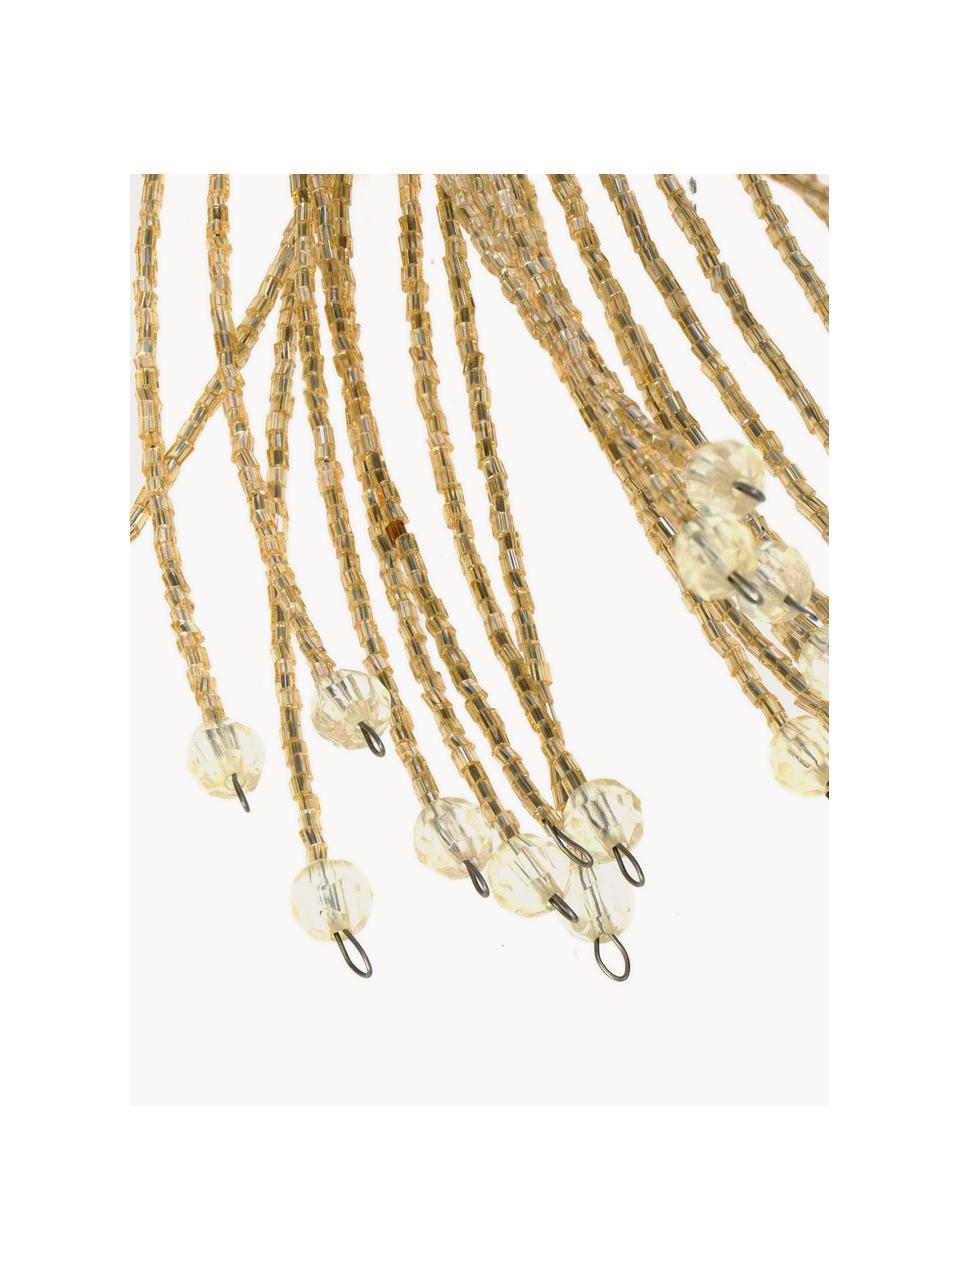 Boomdecoratie Beads met parels, 2 stuks, Glas, gecoat metaal, Champagnekleurig, Ø 40 x H 58 cm